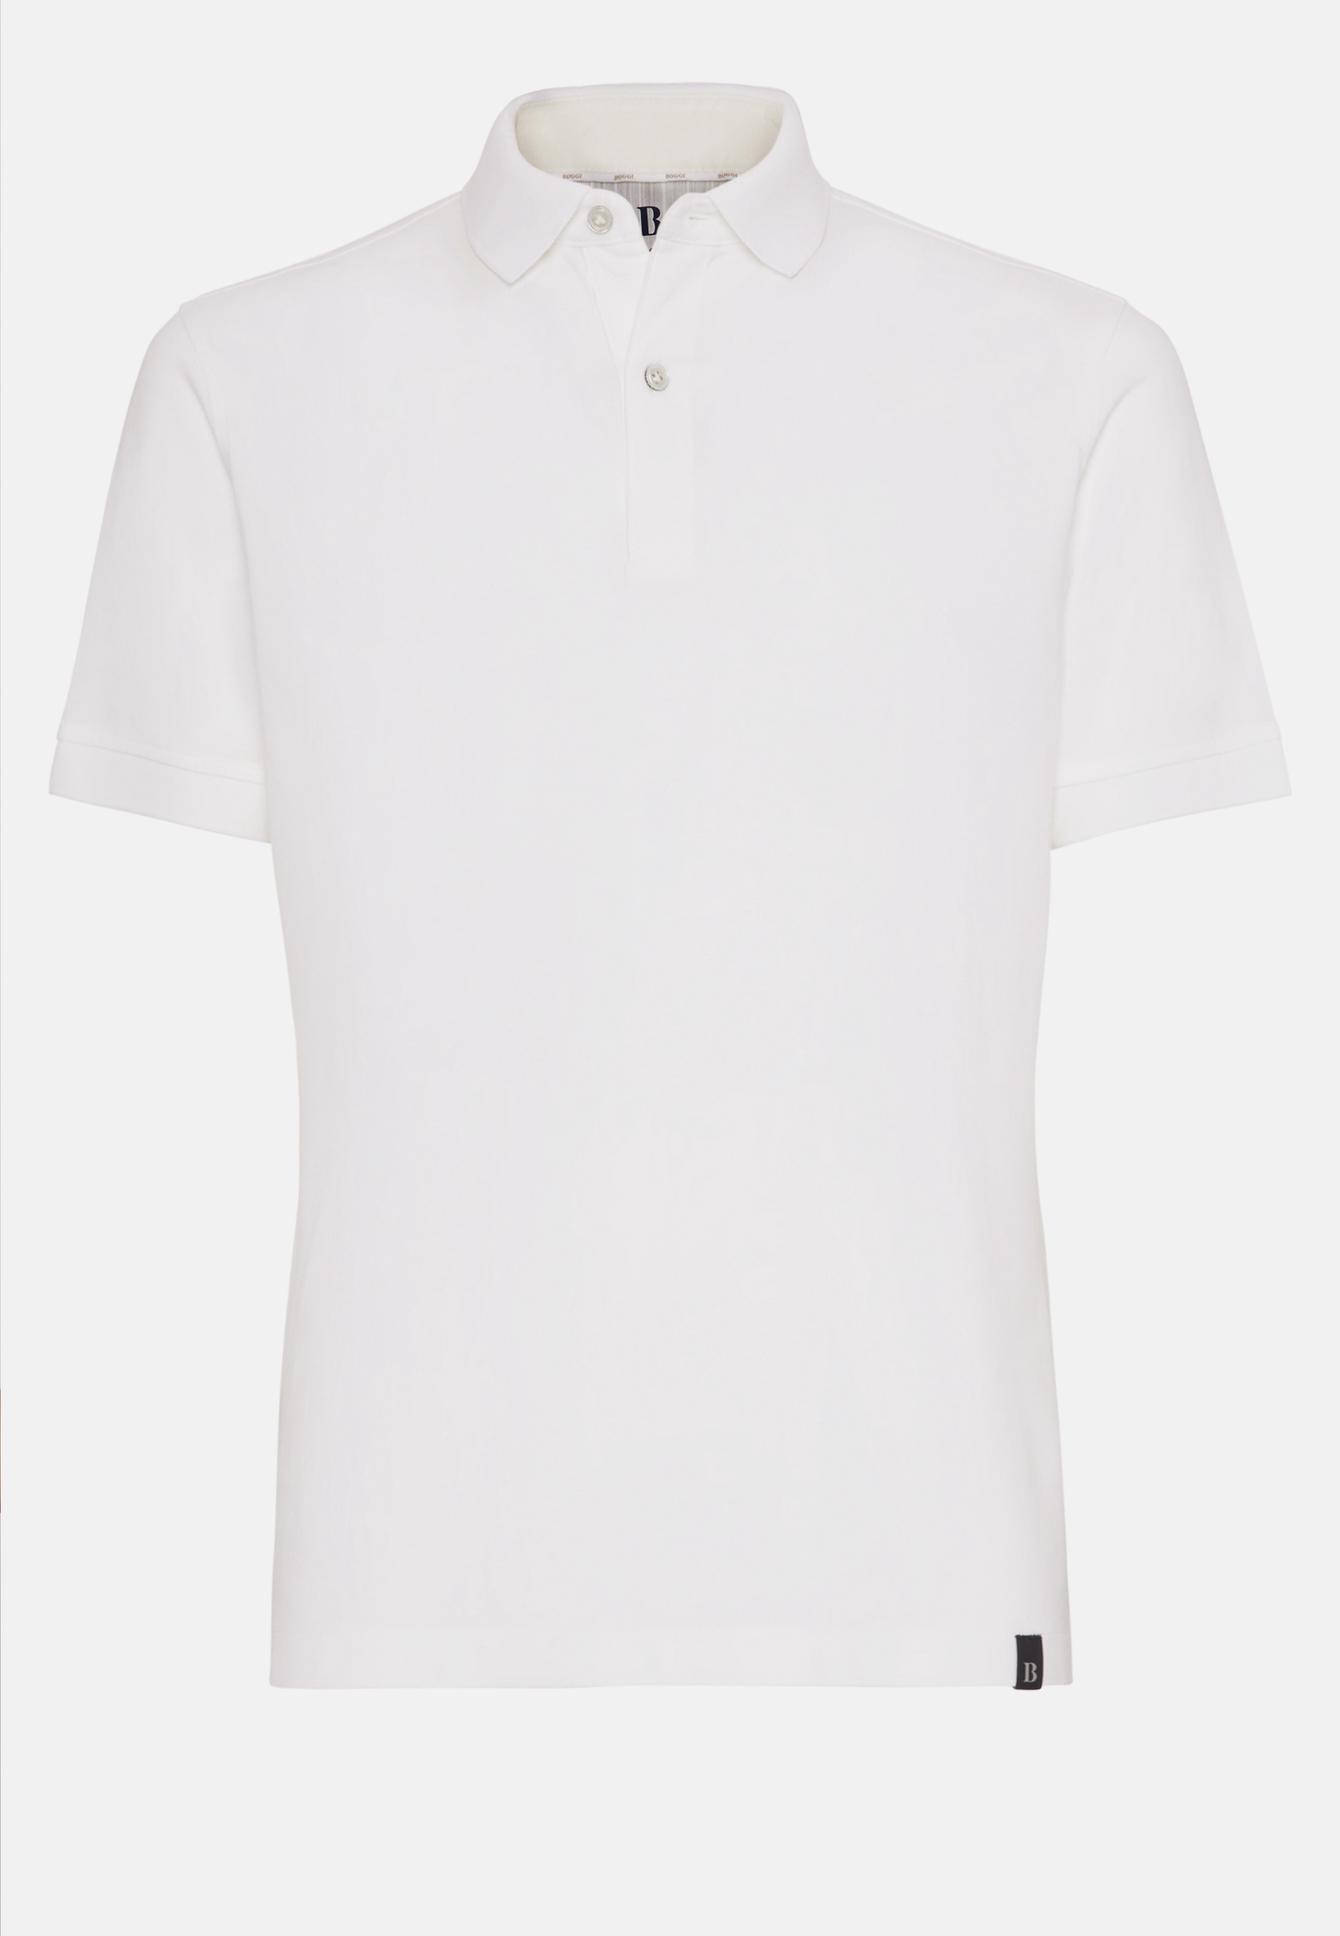 Regular Fit Cotton Pique Polo Shirt | Frankfurt Airport Online Shopping